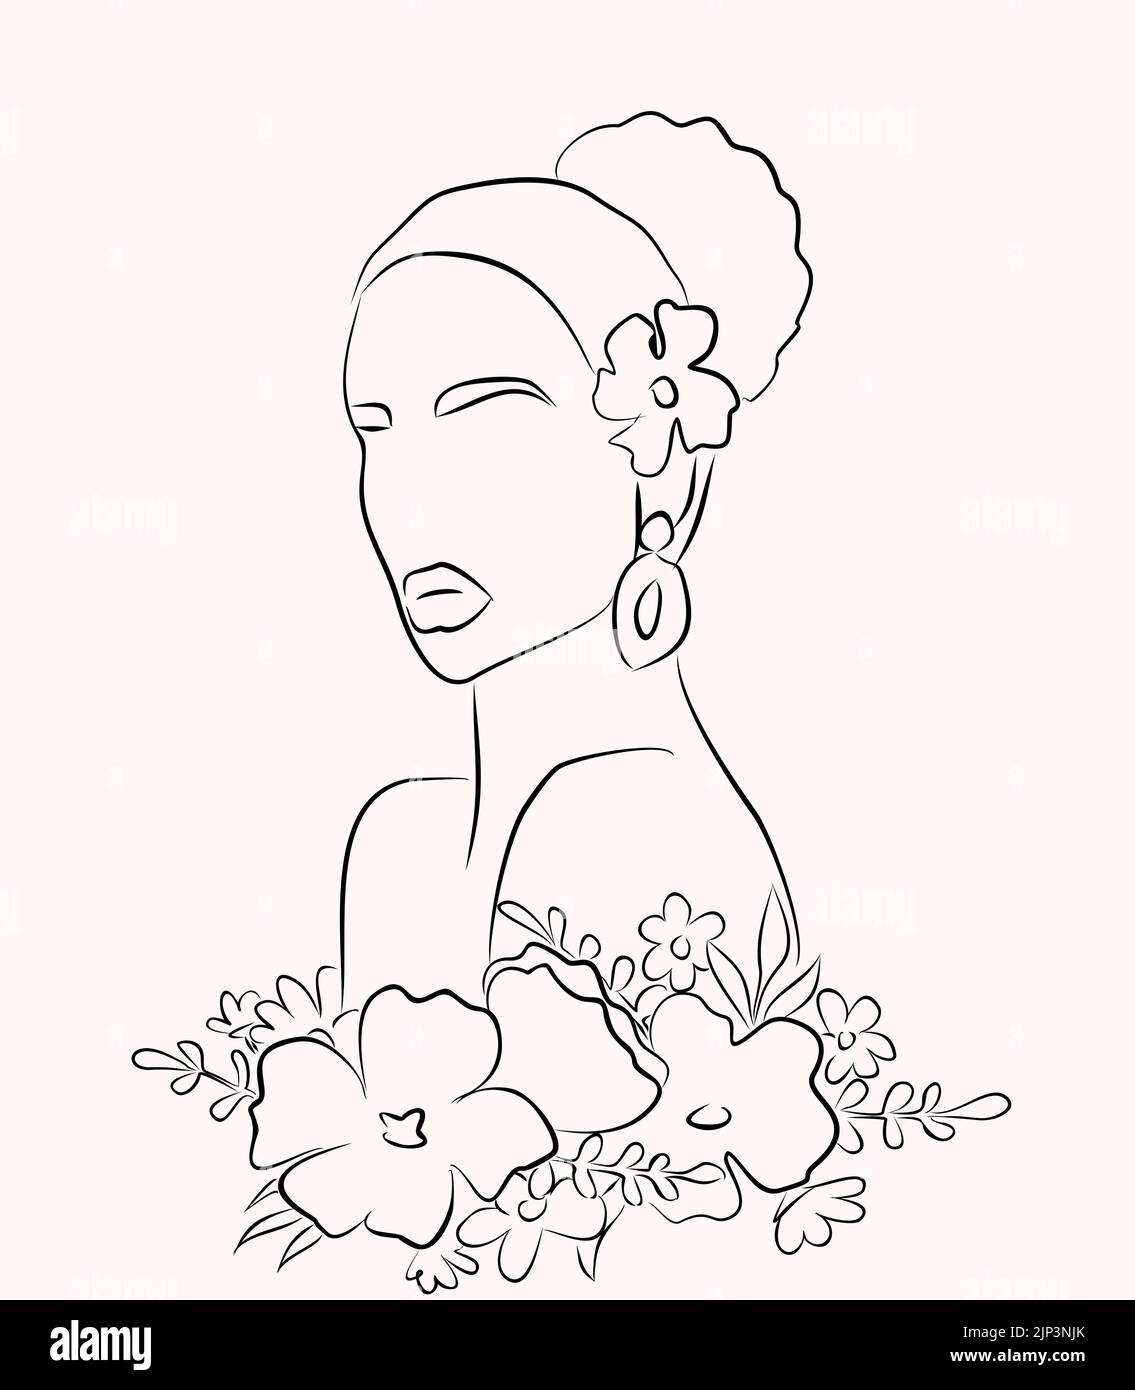 Frauengesicht im Linienkunststil mit Blumen und Blättern. Vektor-Zeichnung eleganten Stil für Schönheit Logo, Drucke, Tattoos, Poster, Textil, Karten usw. Stock Vektor